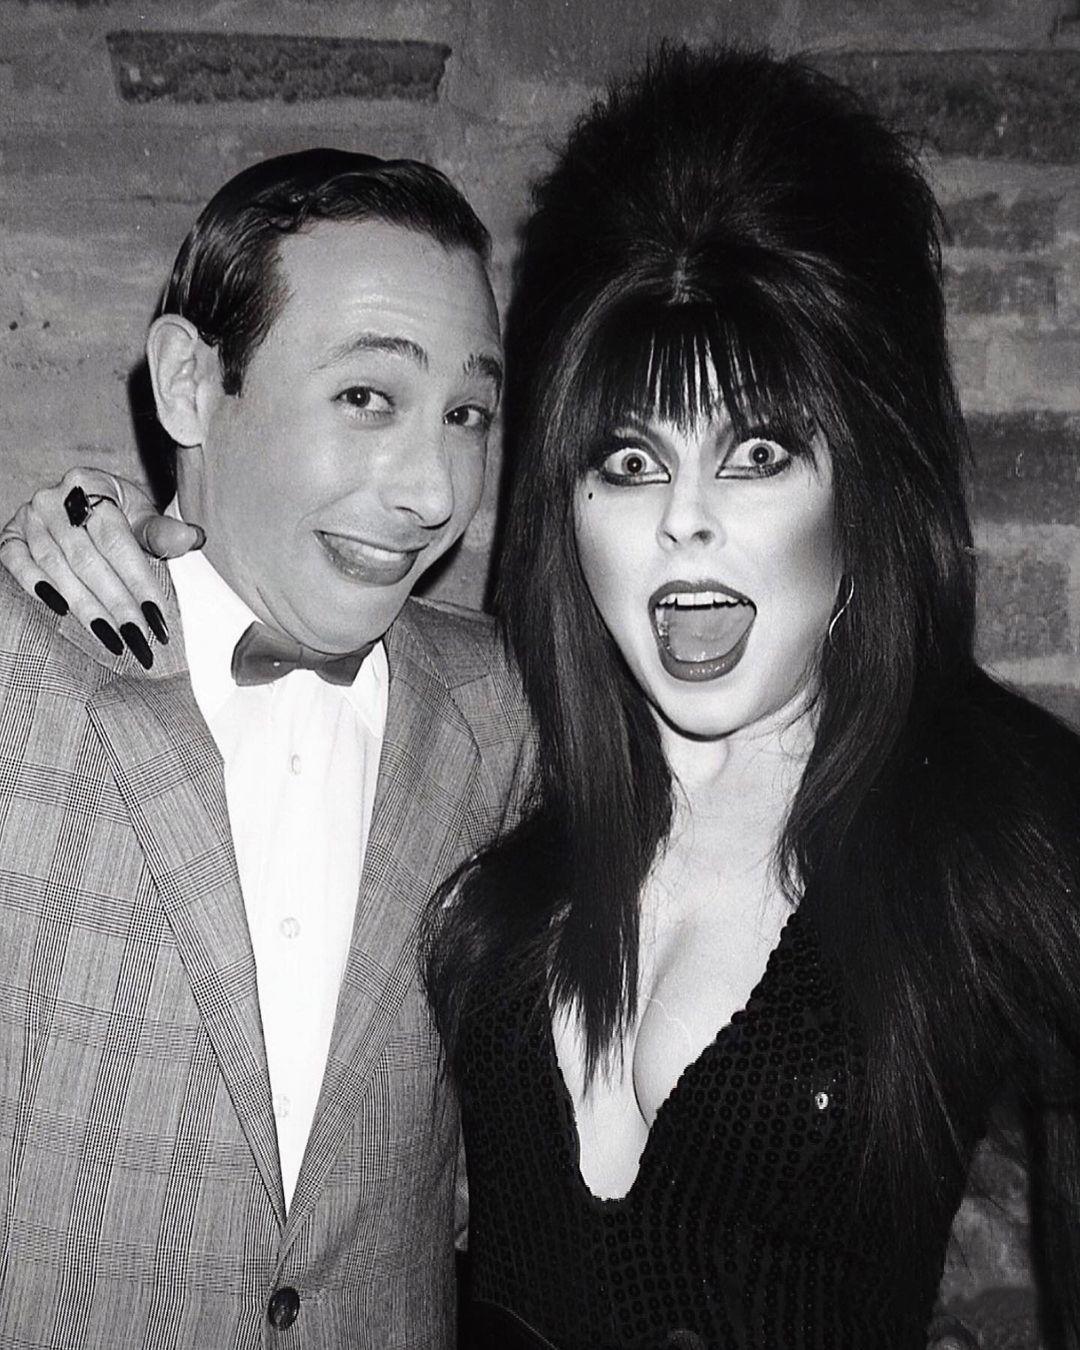 Pee wee Herman and Elvira